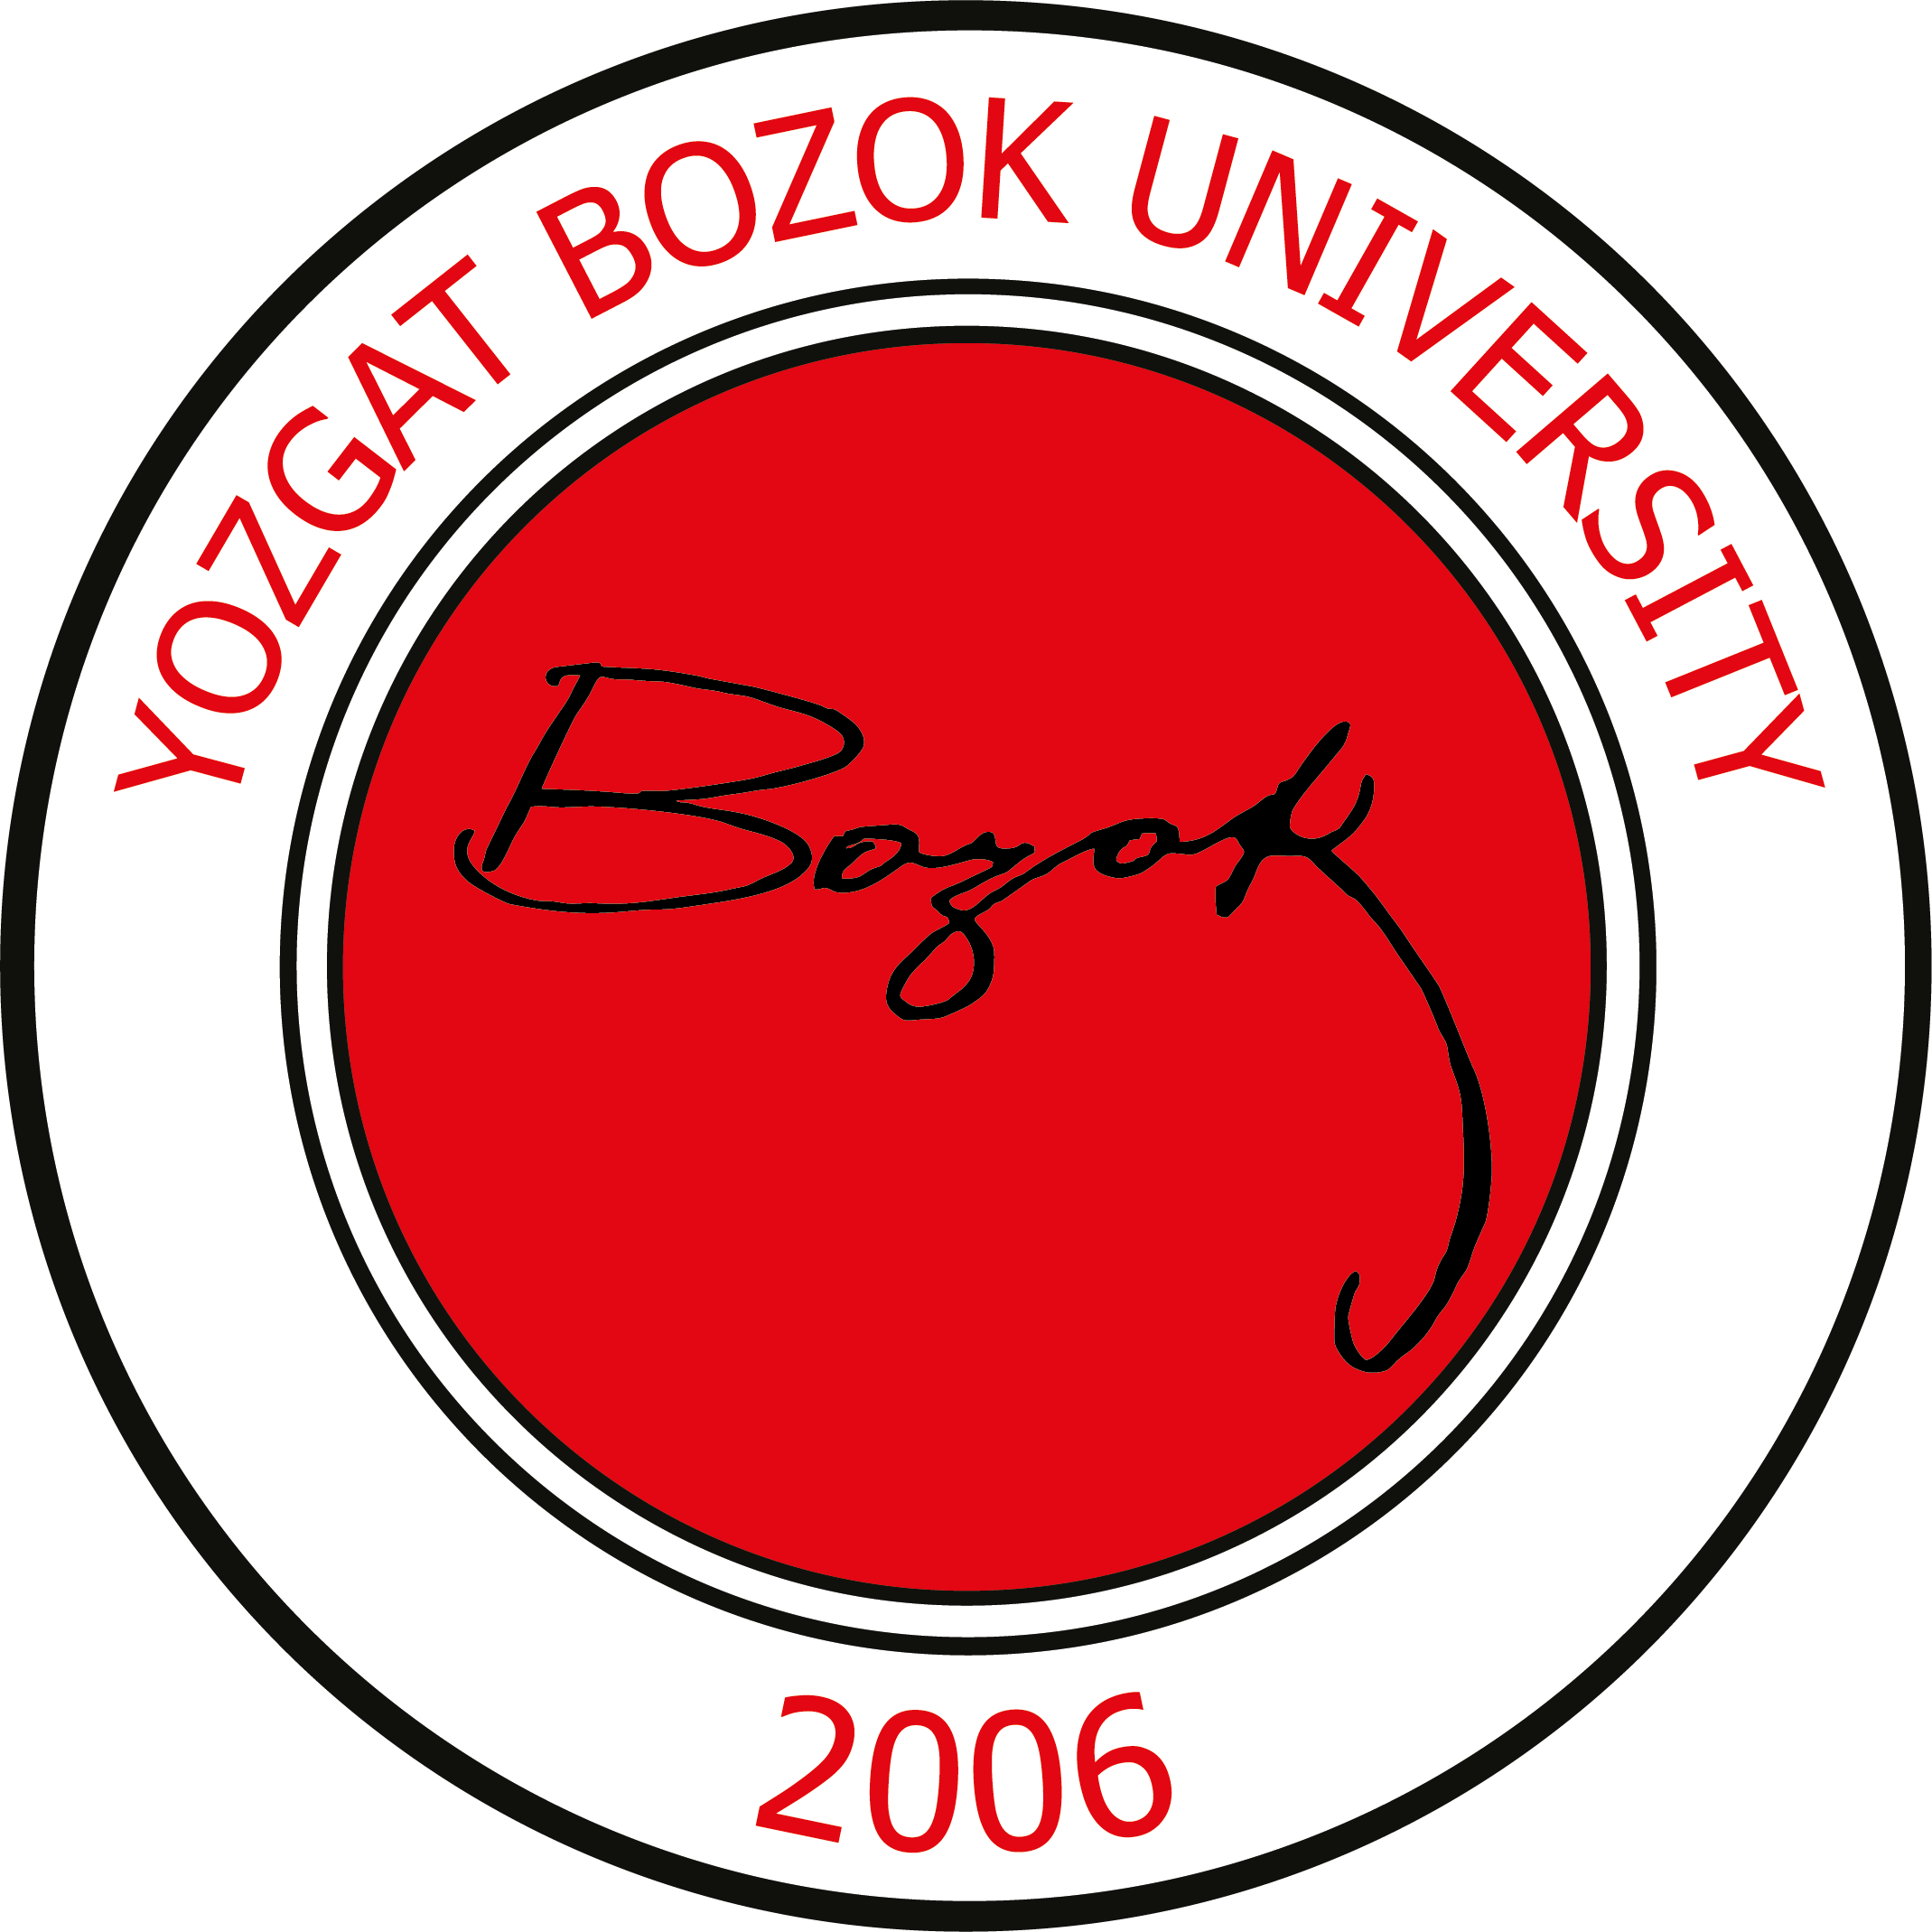 Bozok University